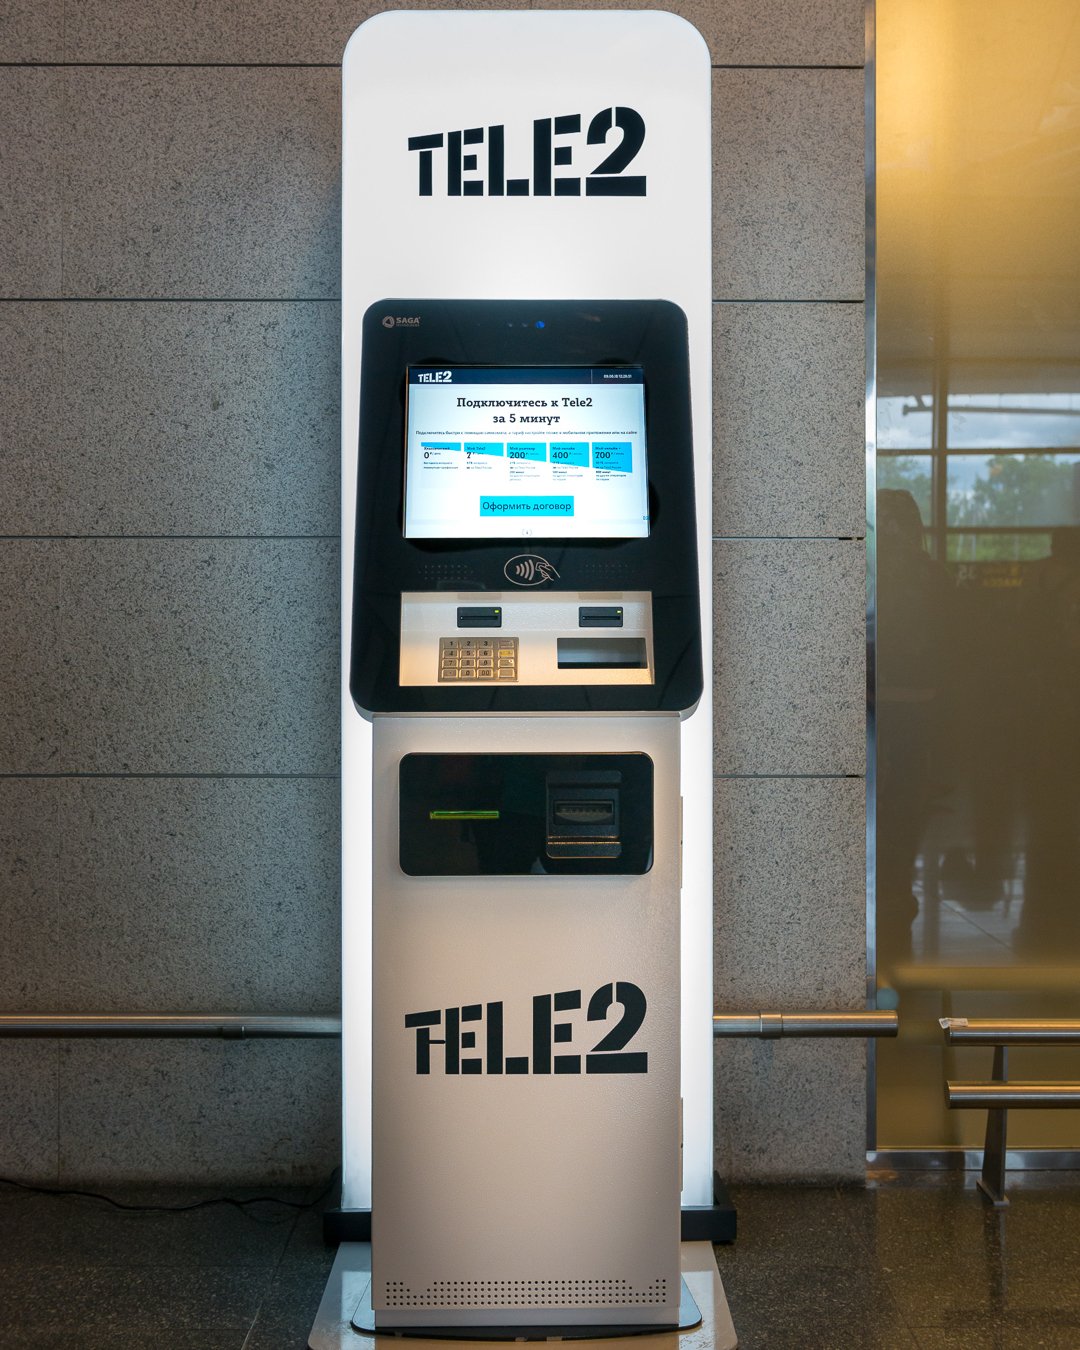 Игровые автоматы пополнение с телефона теле2. Симкомат теле2. Терминал теле2. Автомат с симкой. Теле2 терминалы в Москве.